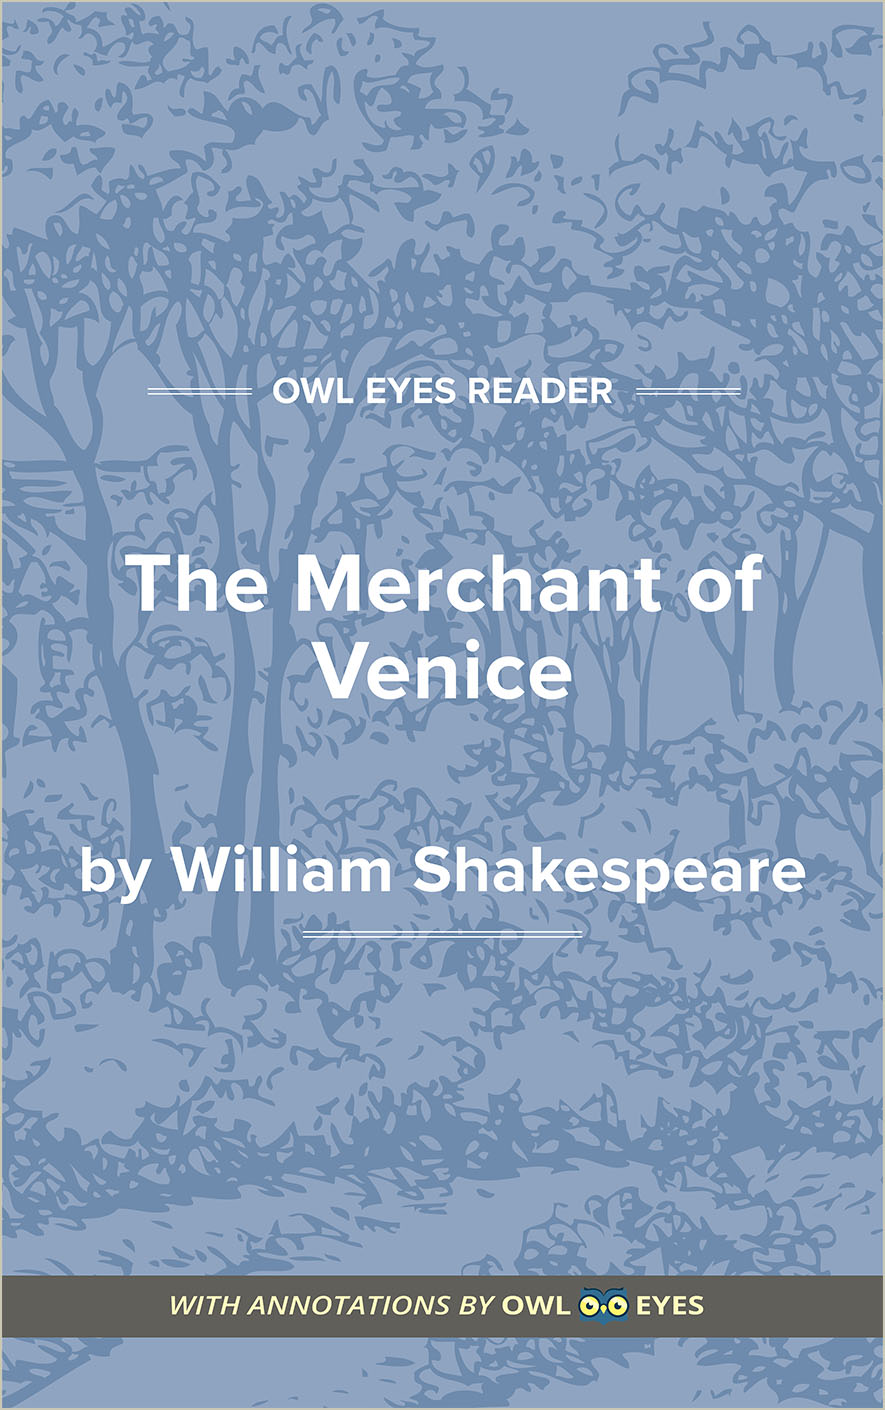 theme of prejudice in merchant of venice